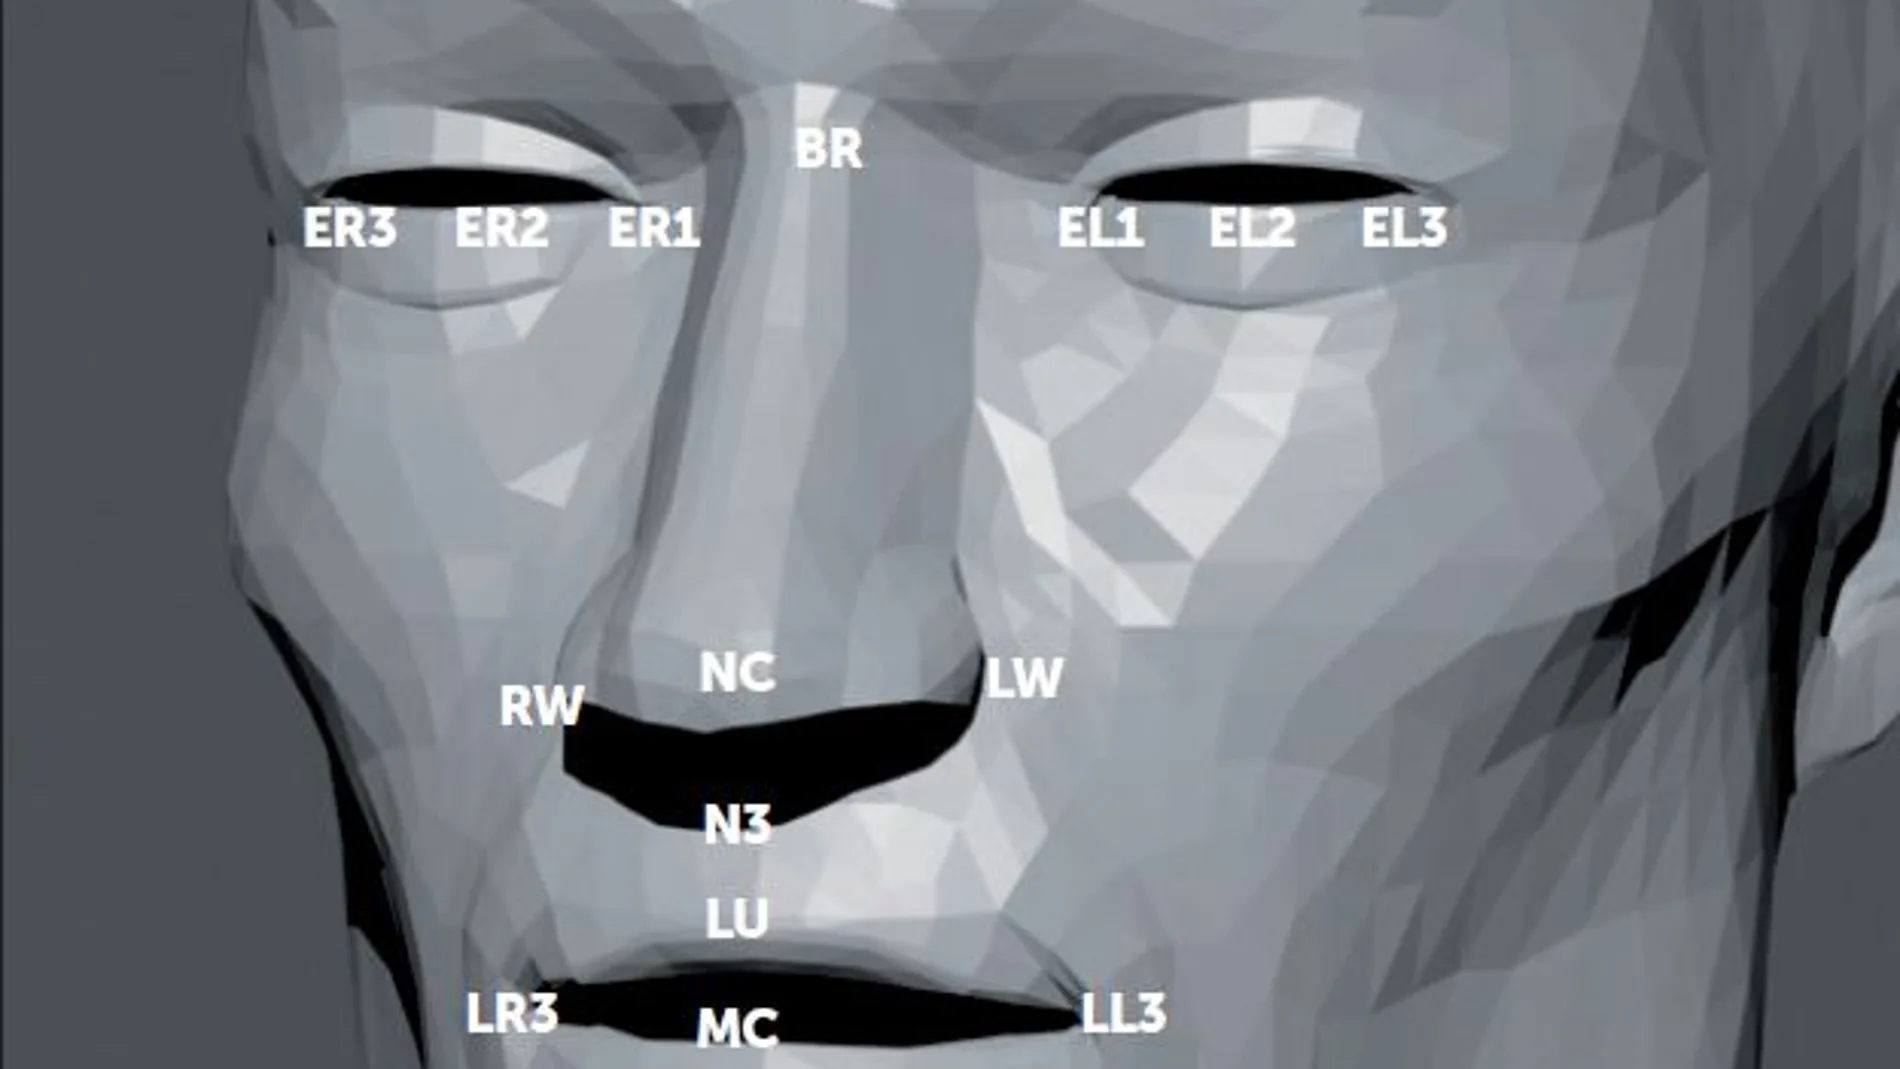 Reconocimiento facial: Los algoritmos sabrán quién eres aunque vayas tapado